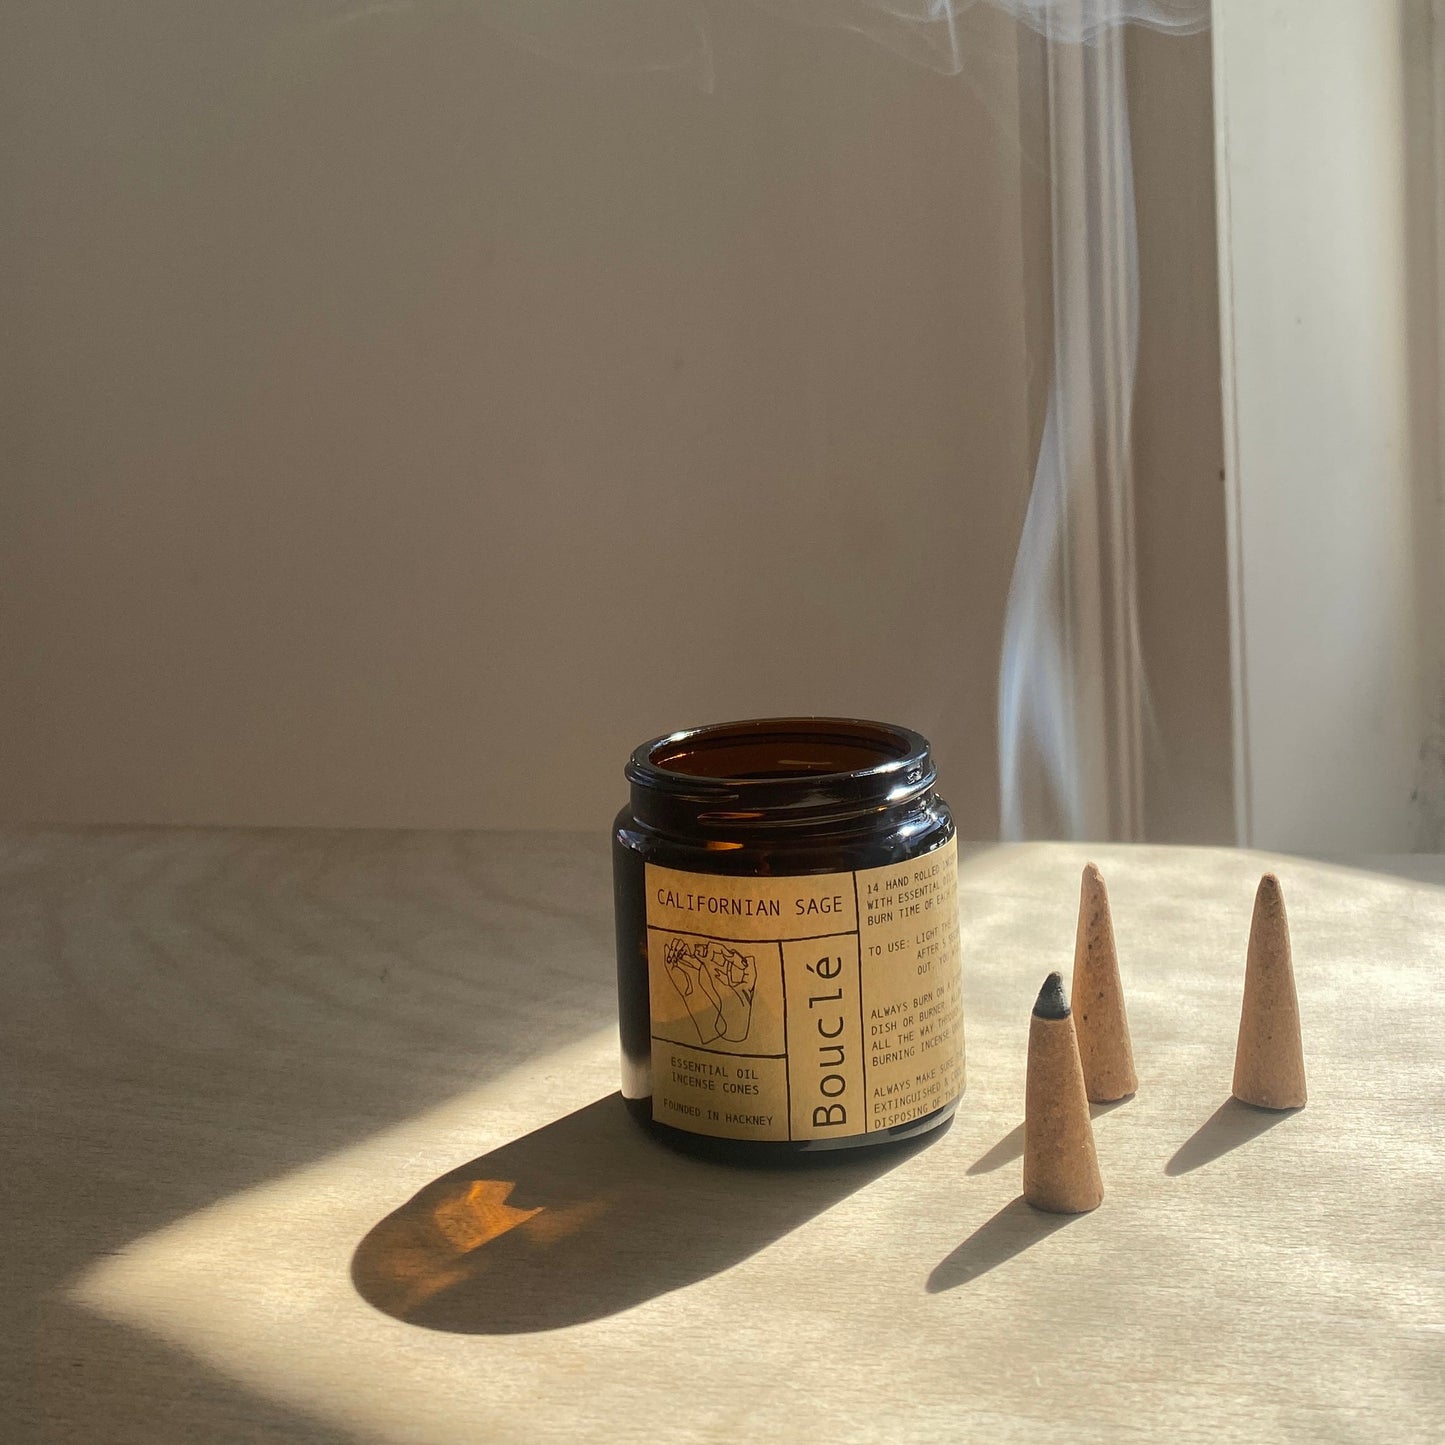 Bouclé London essential oil white sage incense cones